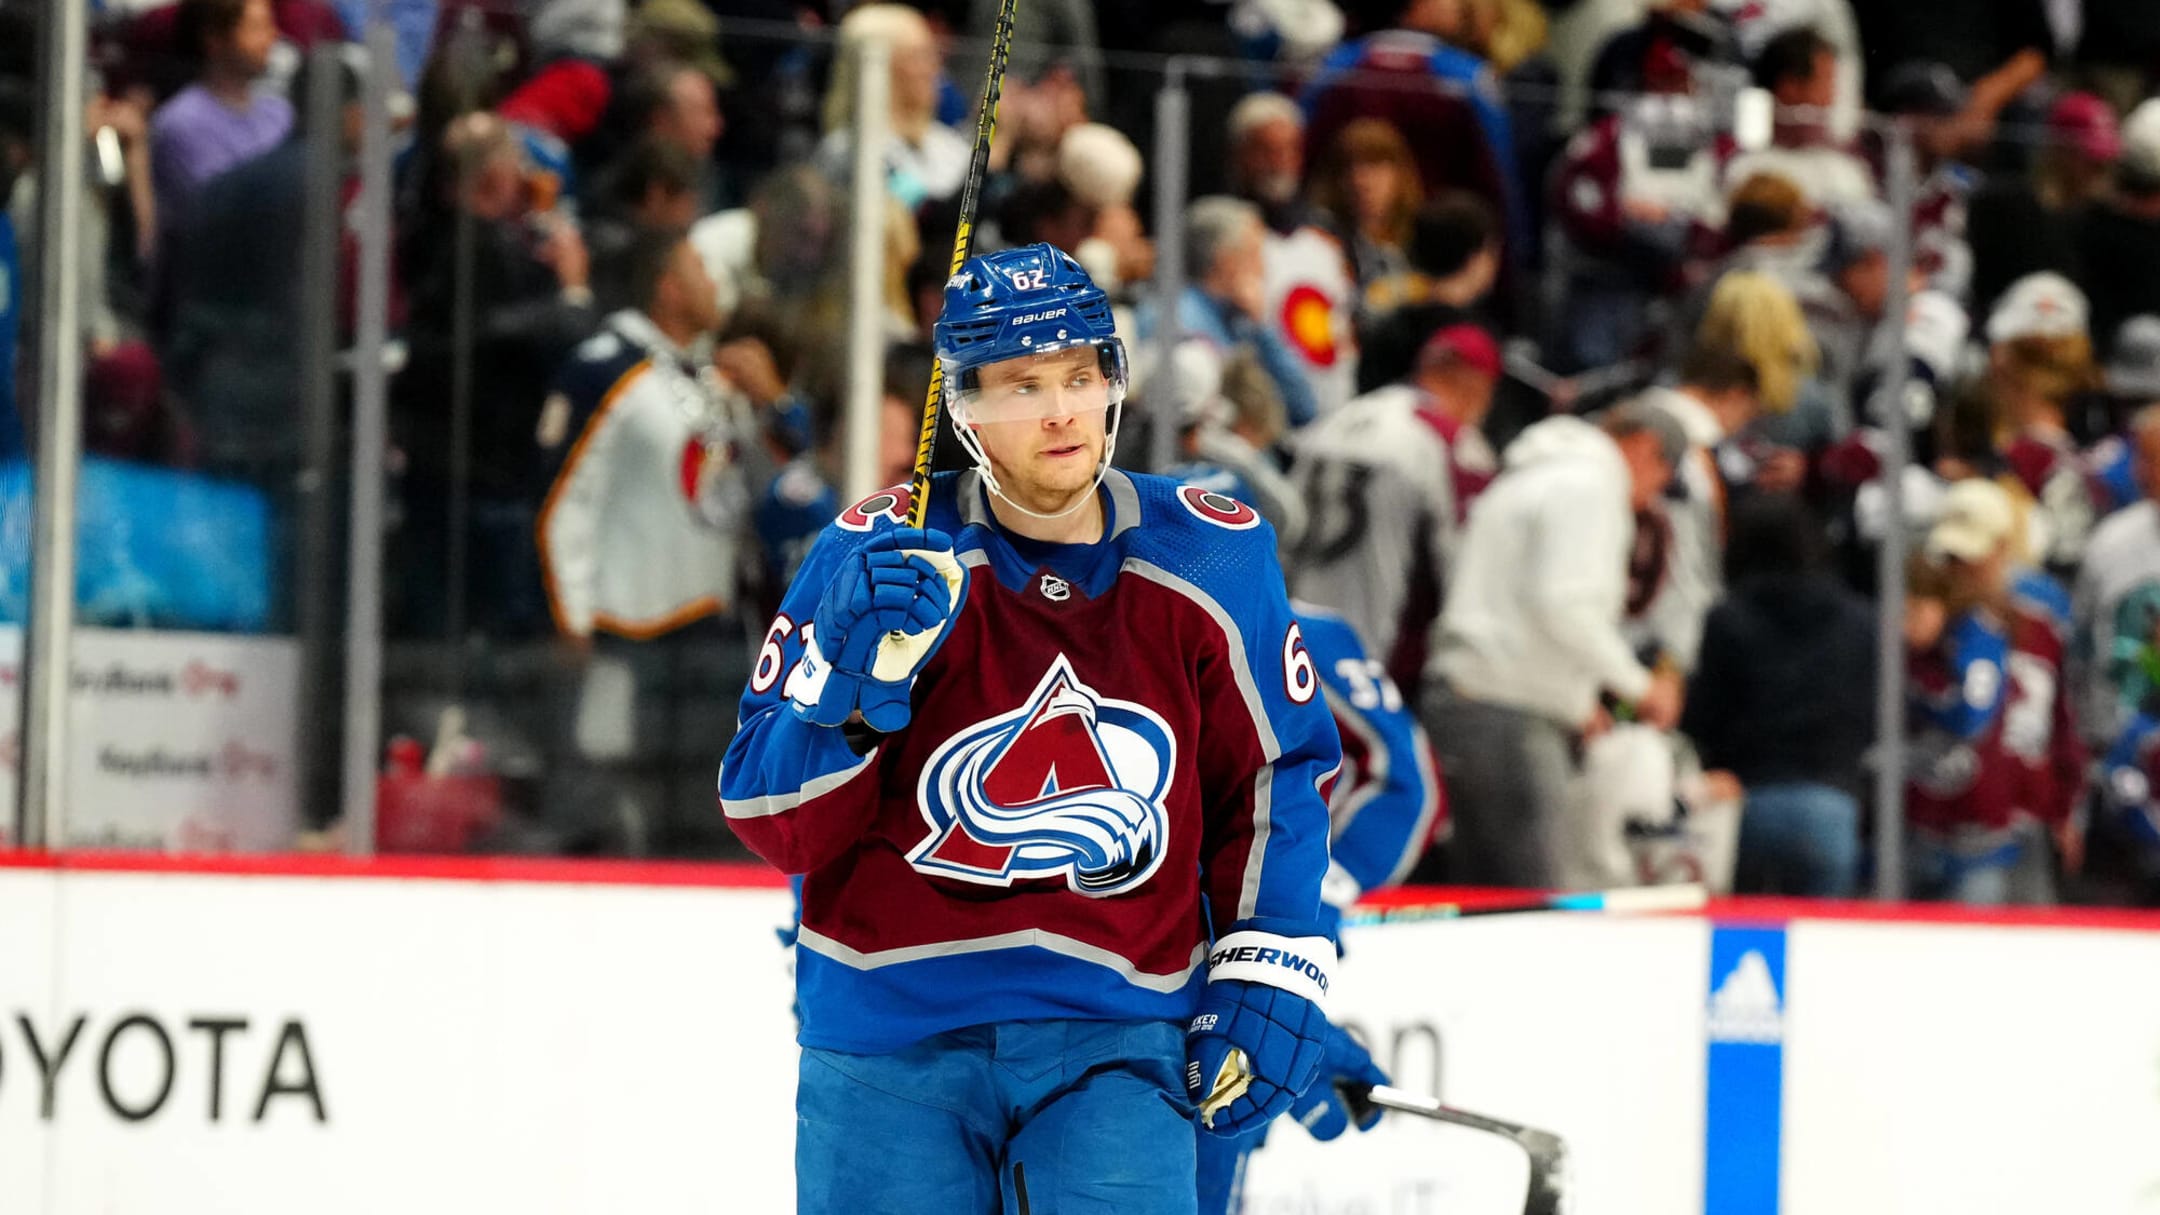 Nikolai Kovalenko signs with Colorado Avalanche - The Hockey News